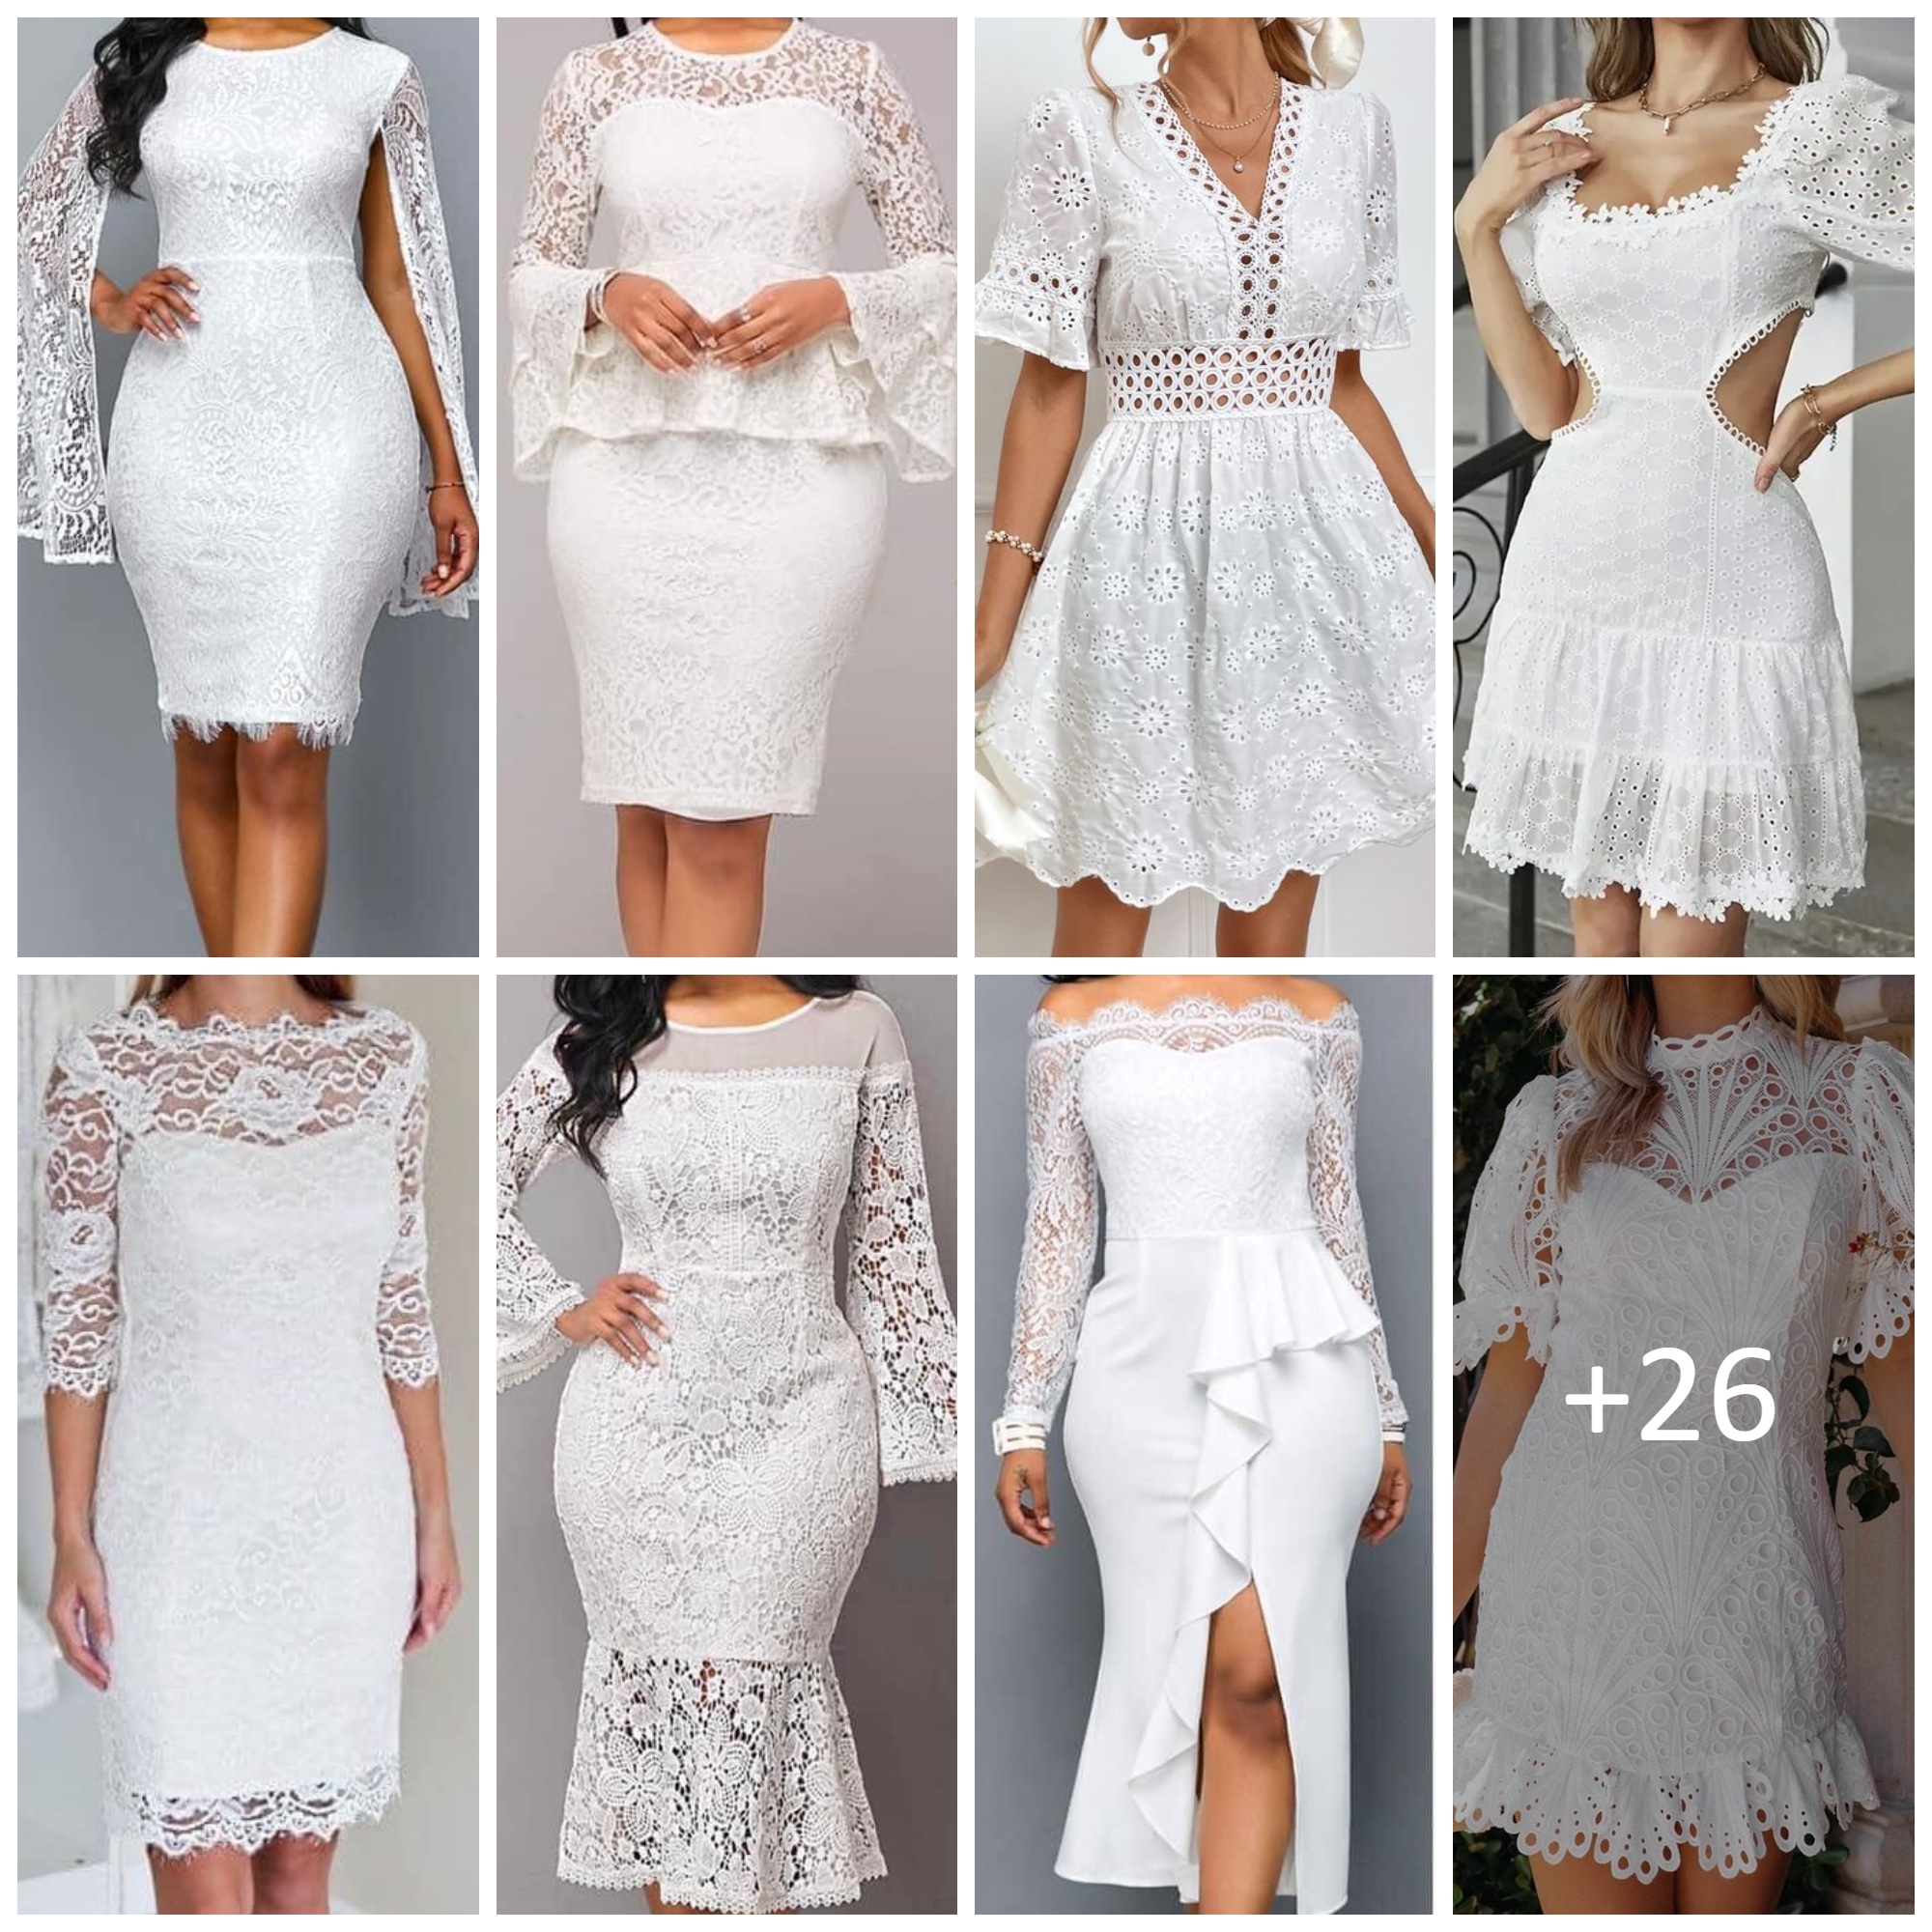 White Lace Dress Ideas